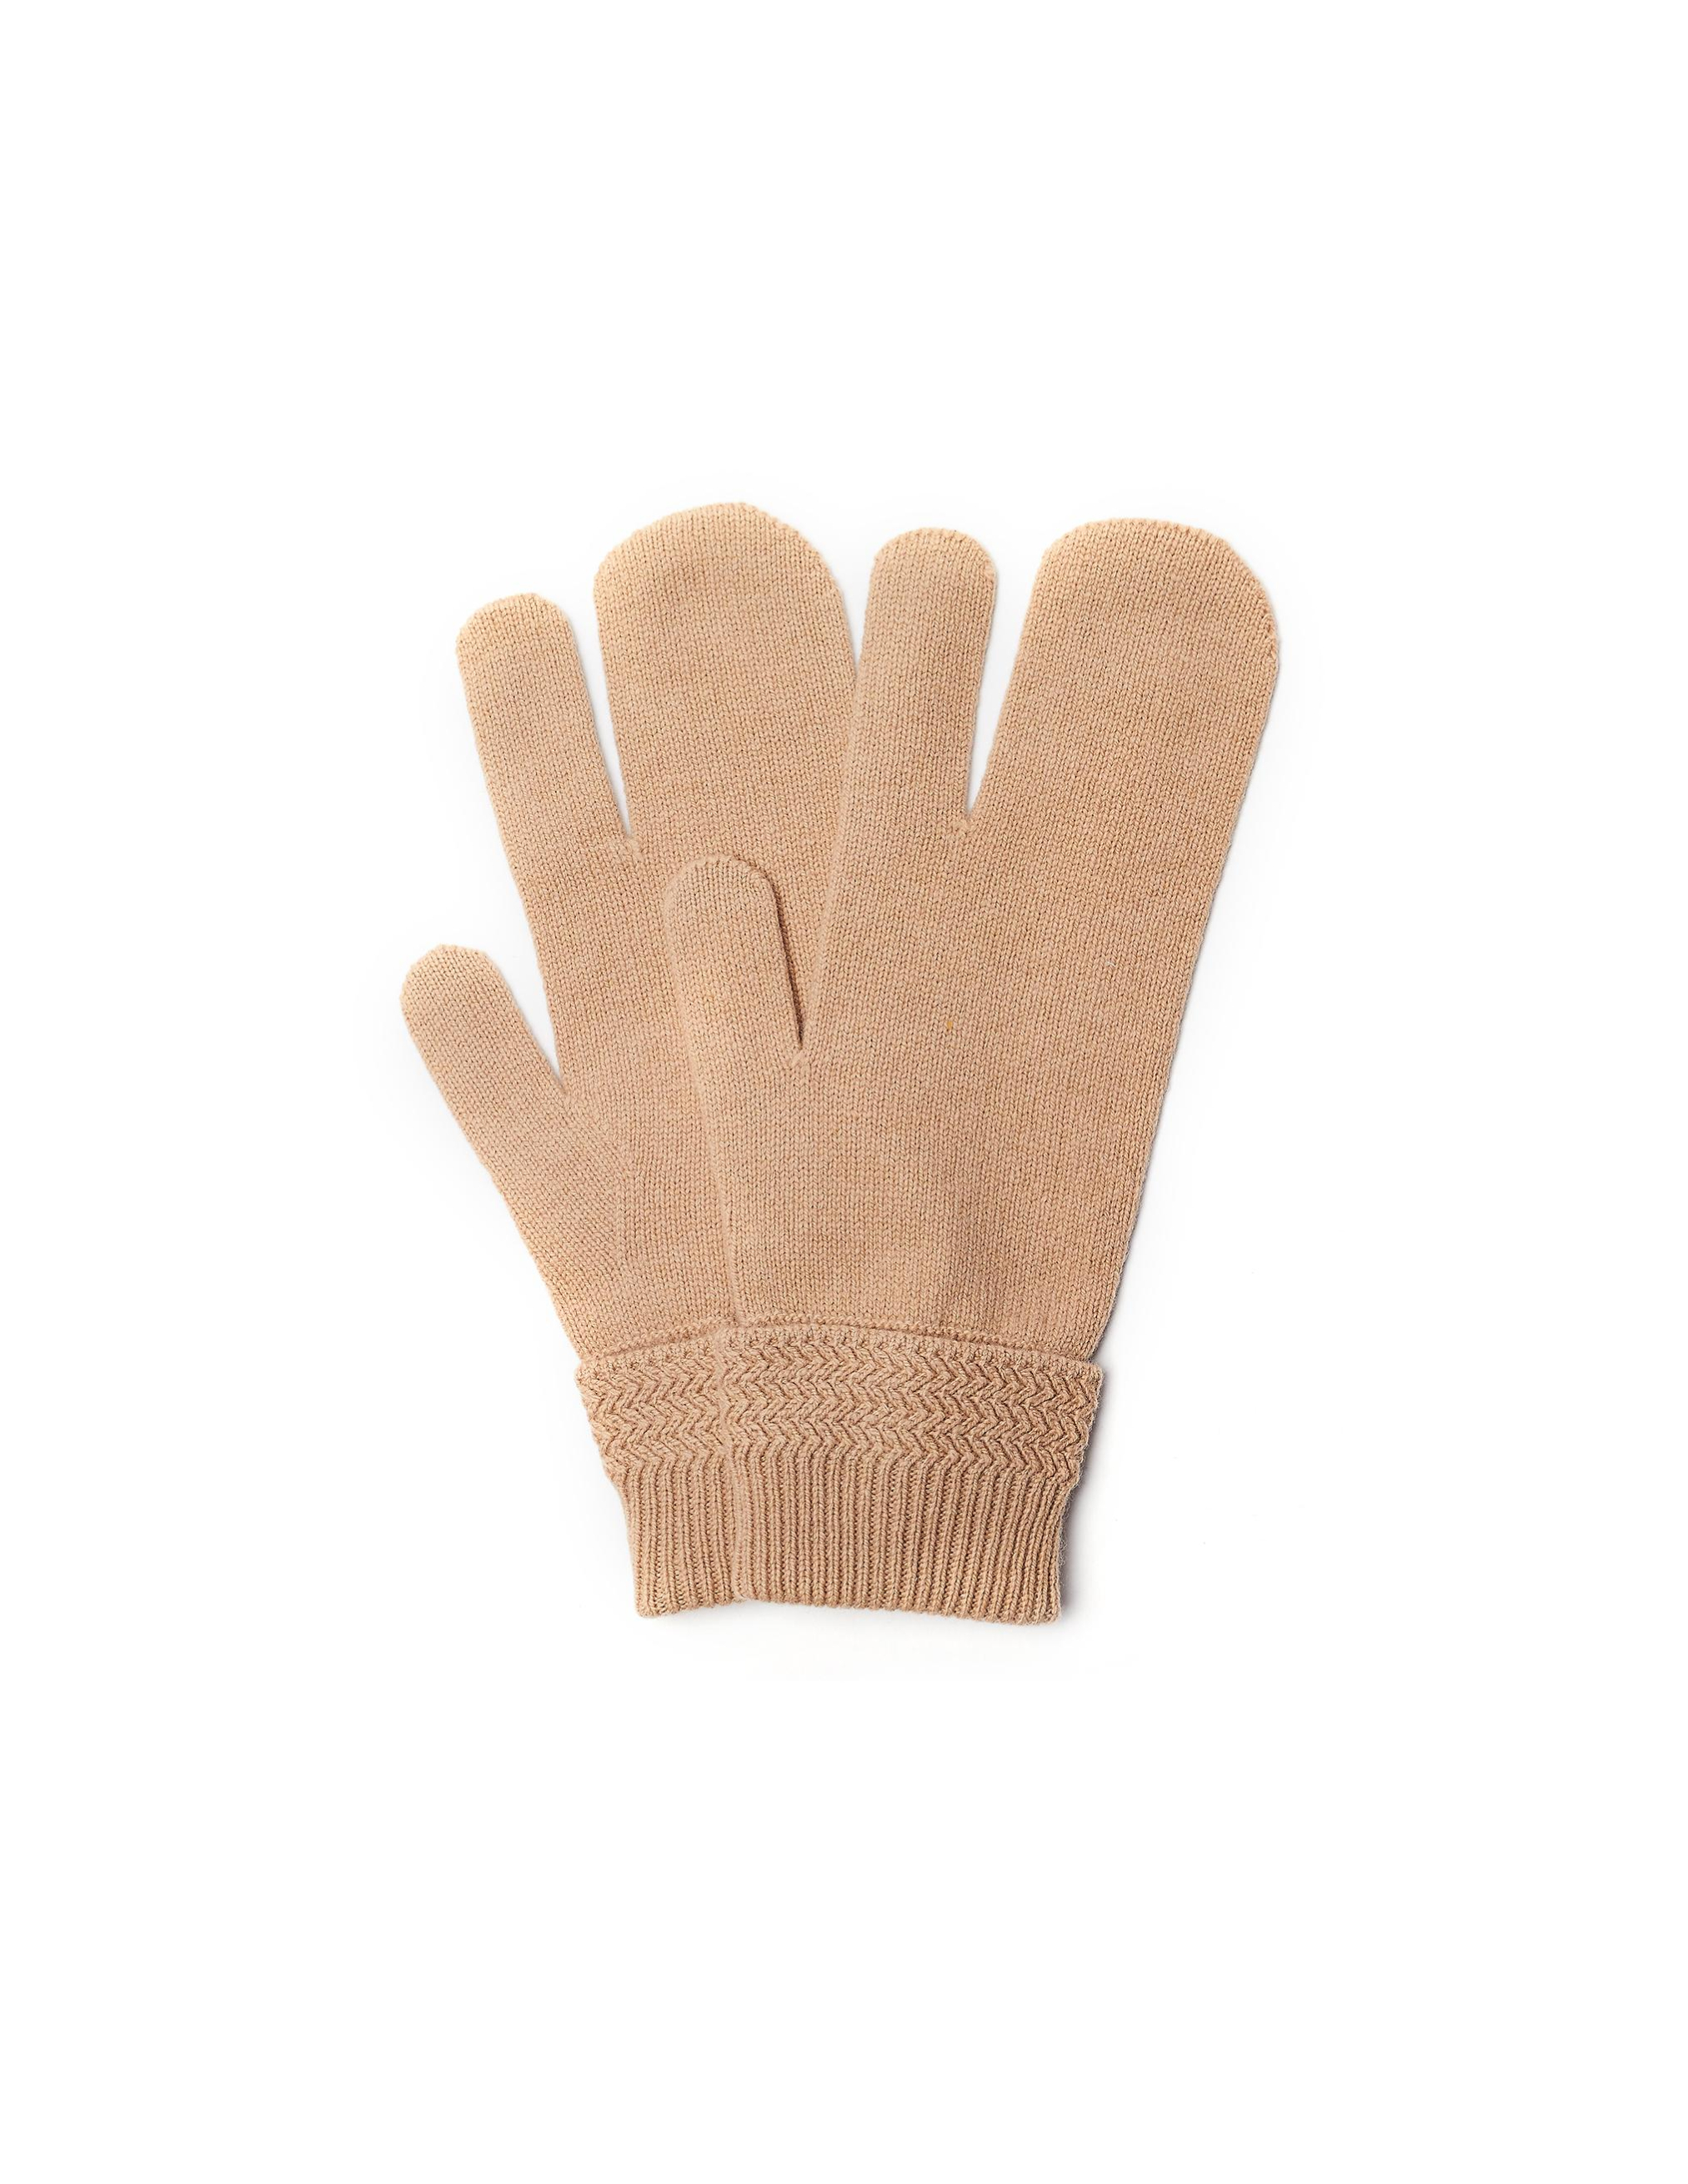 Бежевые перчатки из шерсти и кашемира Maison Margiela S50TS0007/S16825/cml, размер M;L S50TS0007/S16825/cml - фото 1